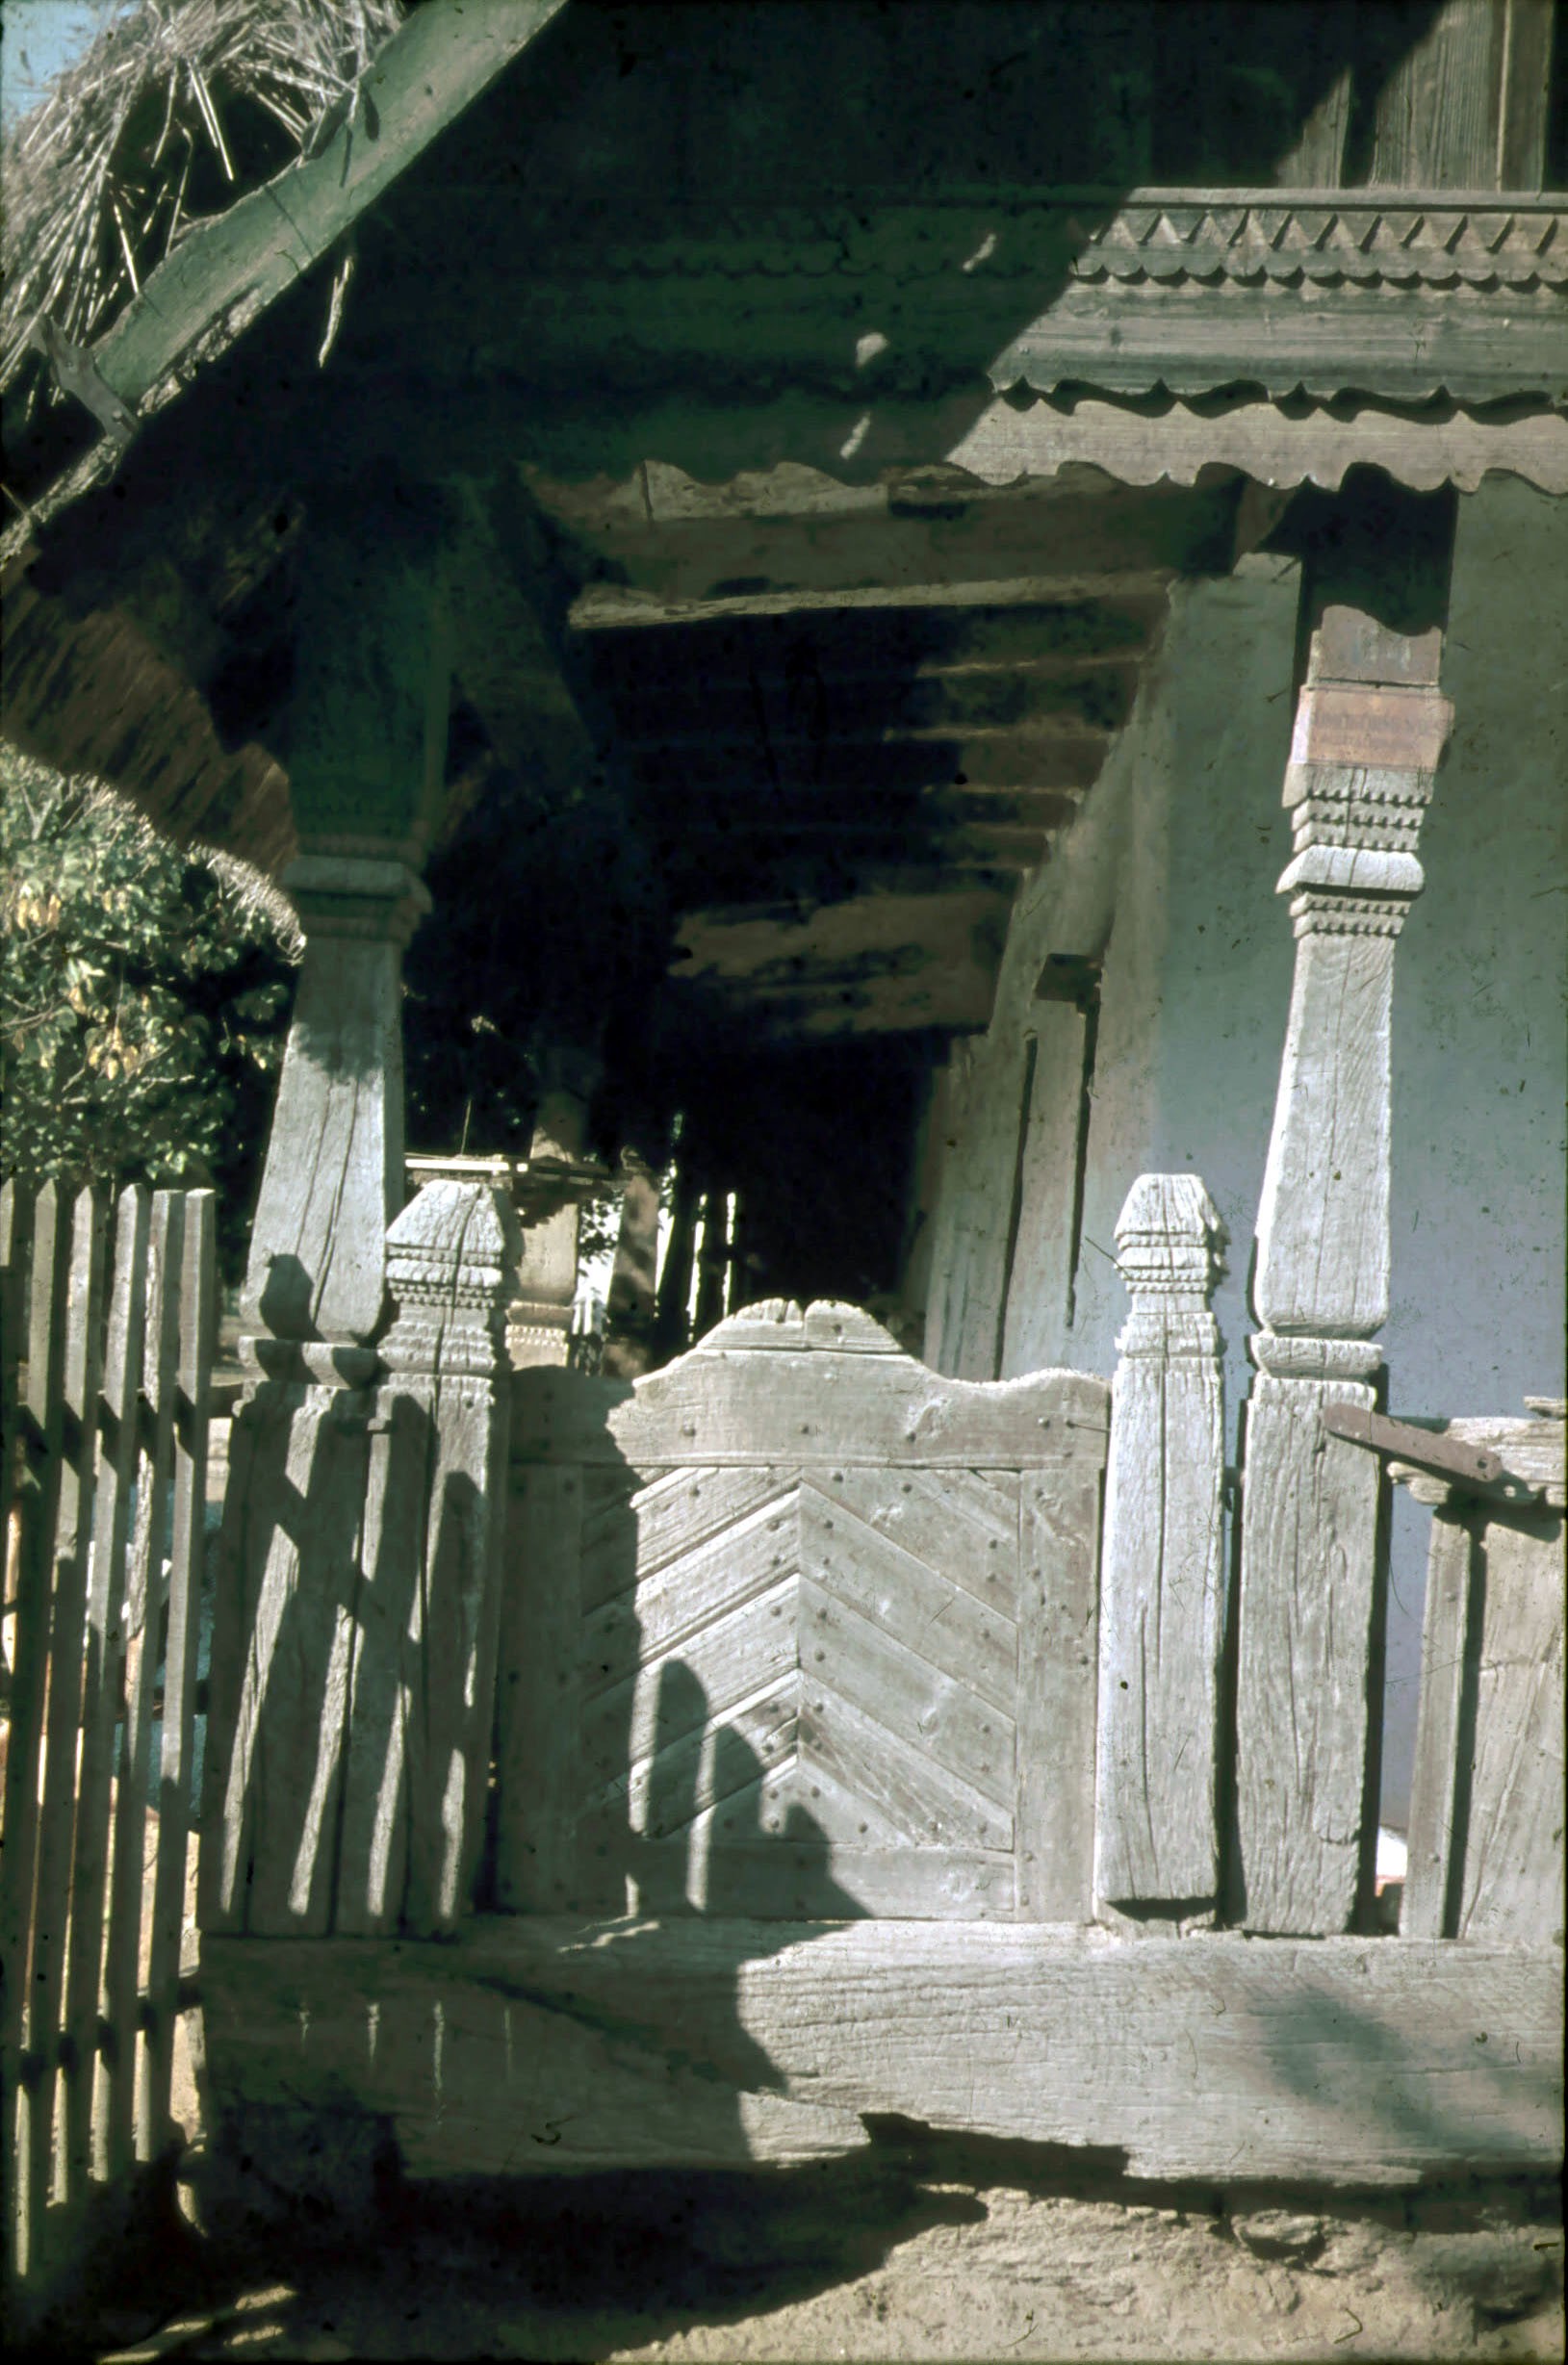 Csökölyi faragott pitarajtójú, pitaroszlopú lakóház pitarrészlete (Rippl-Rónai Múzeum CC BY-NC-ND)